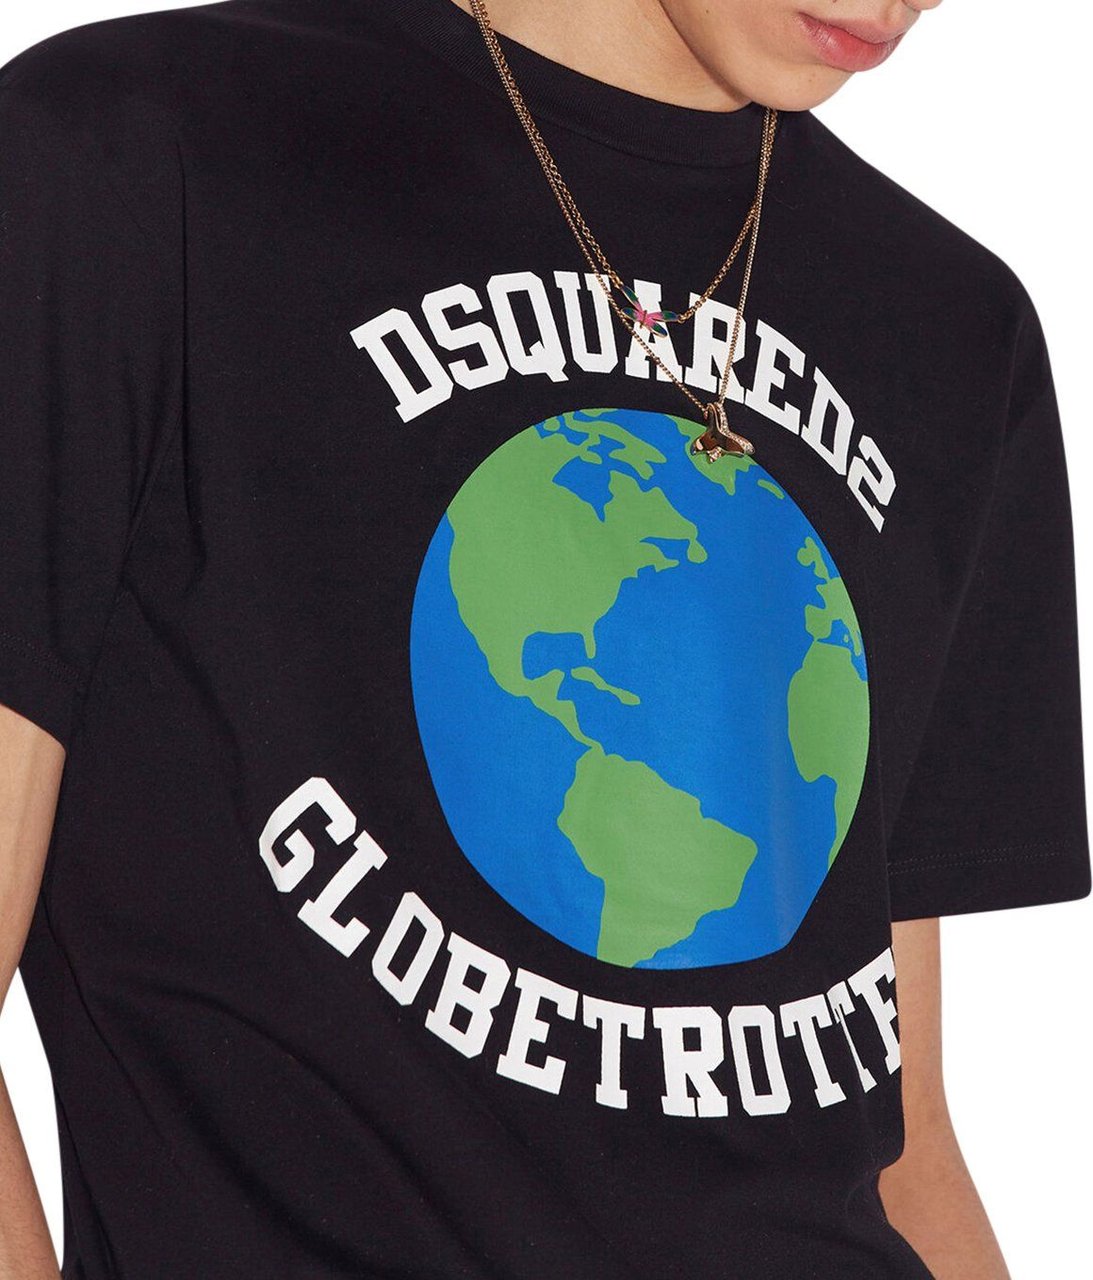 Dsquared2 Globetrotter Cool Tee Shirt Zwart